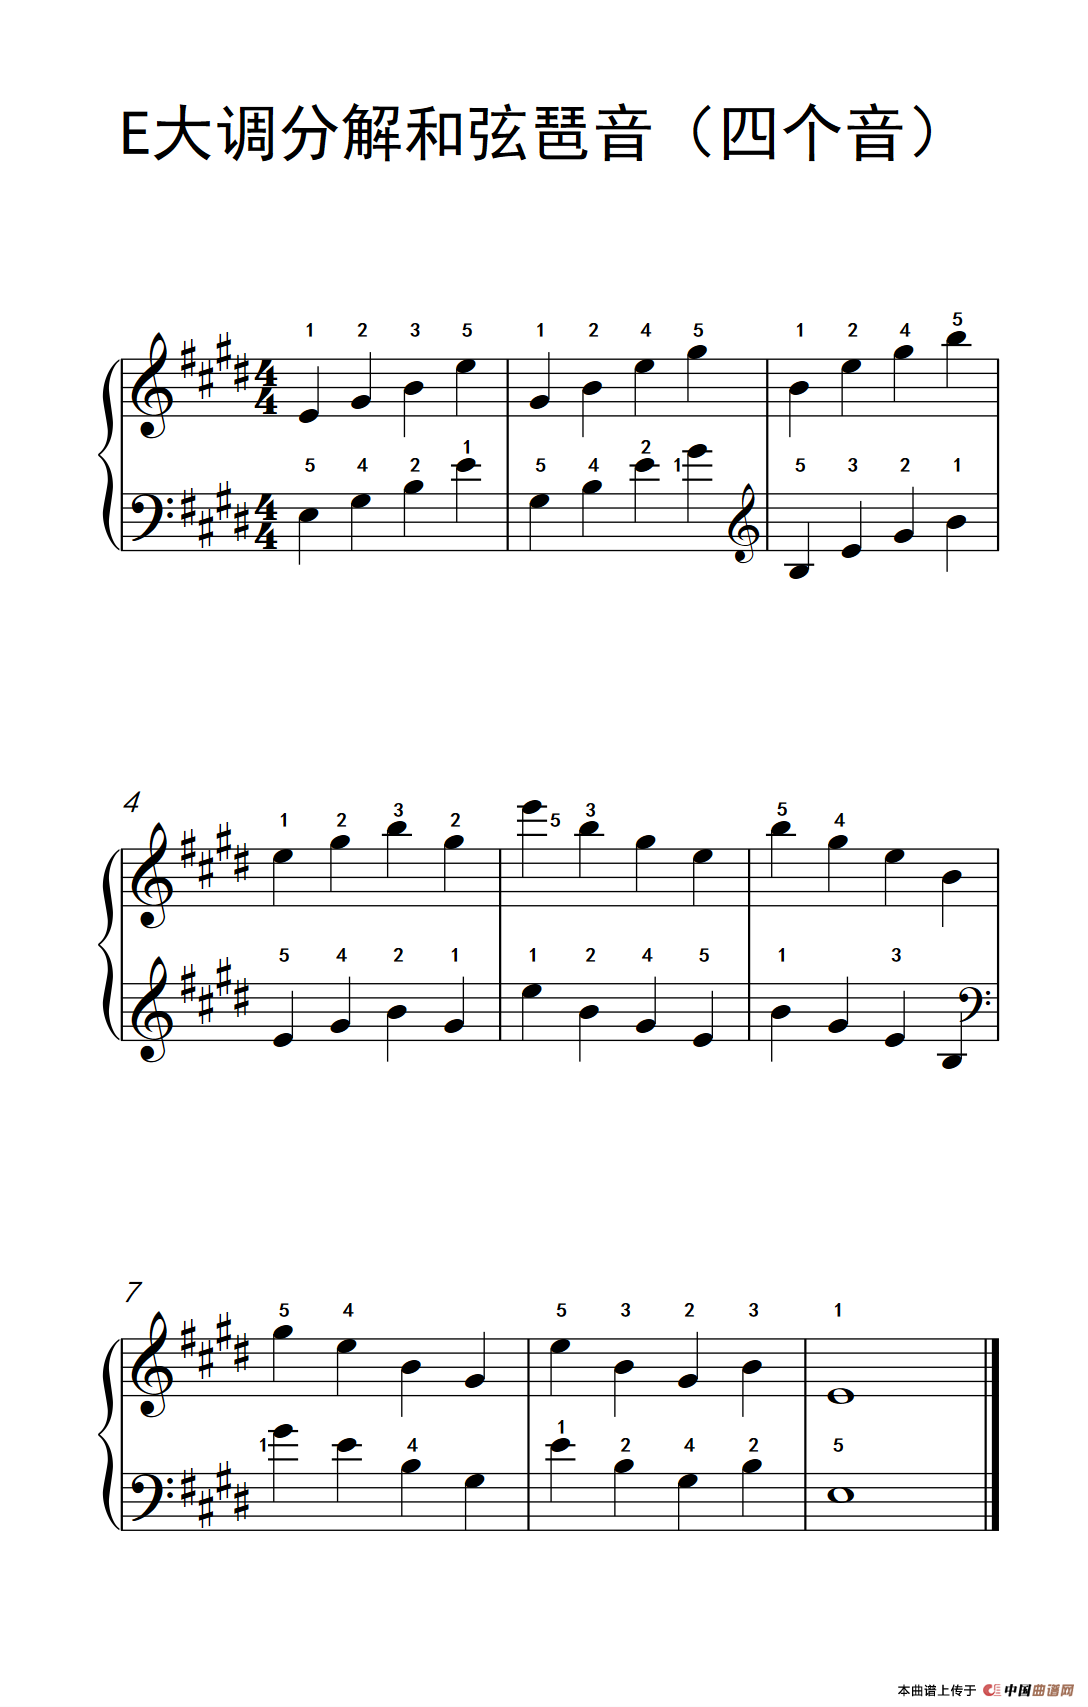 钢琴与琶音曲谱_钢琴琶音指法图(2)